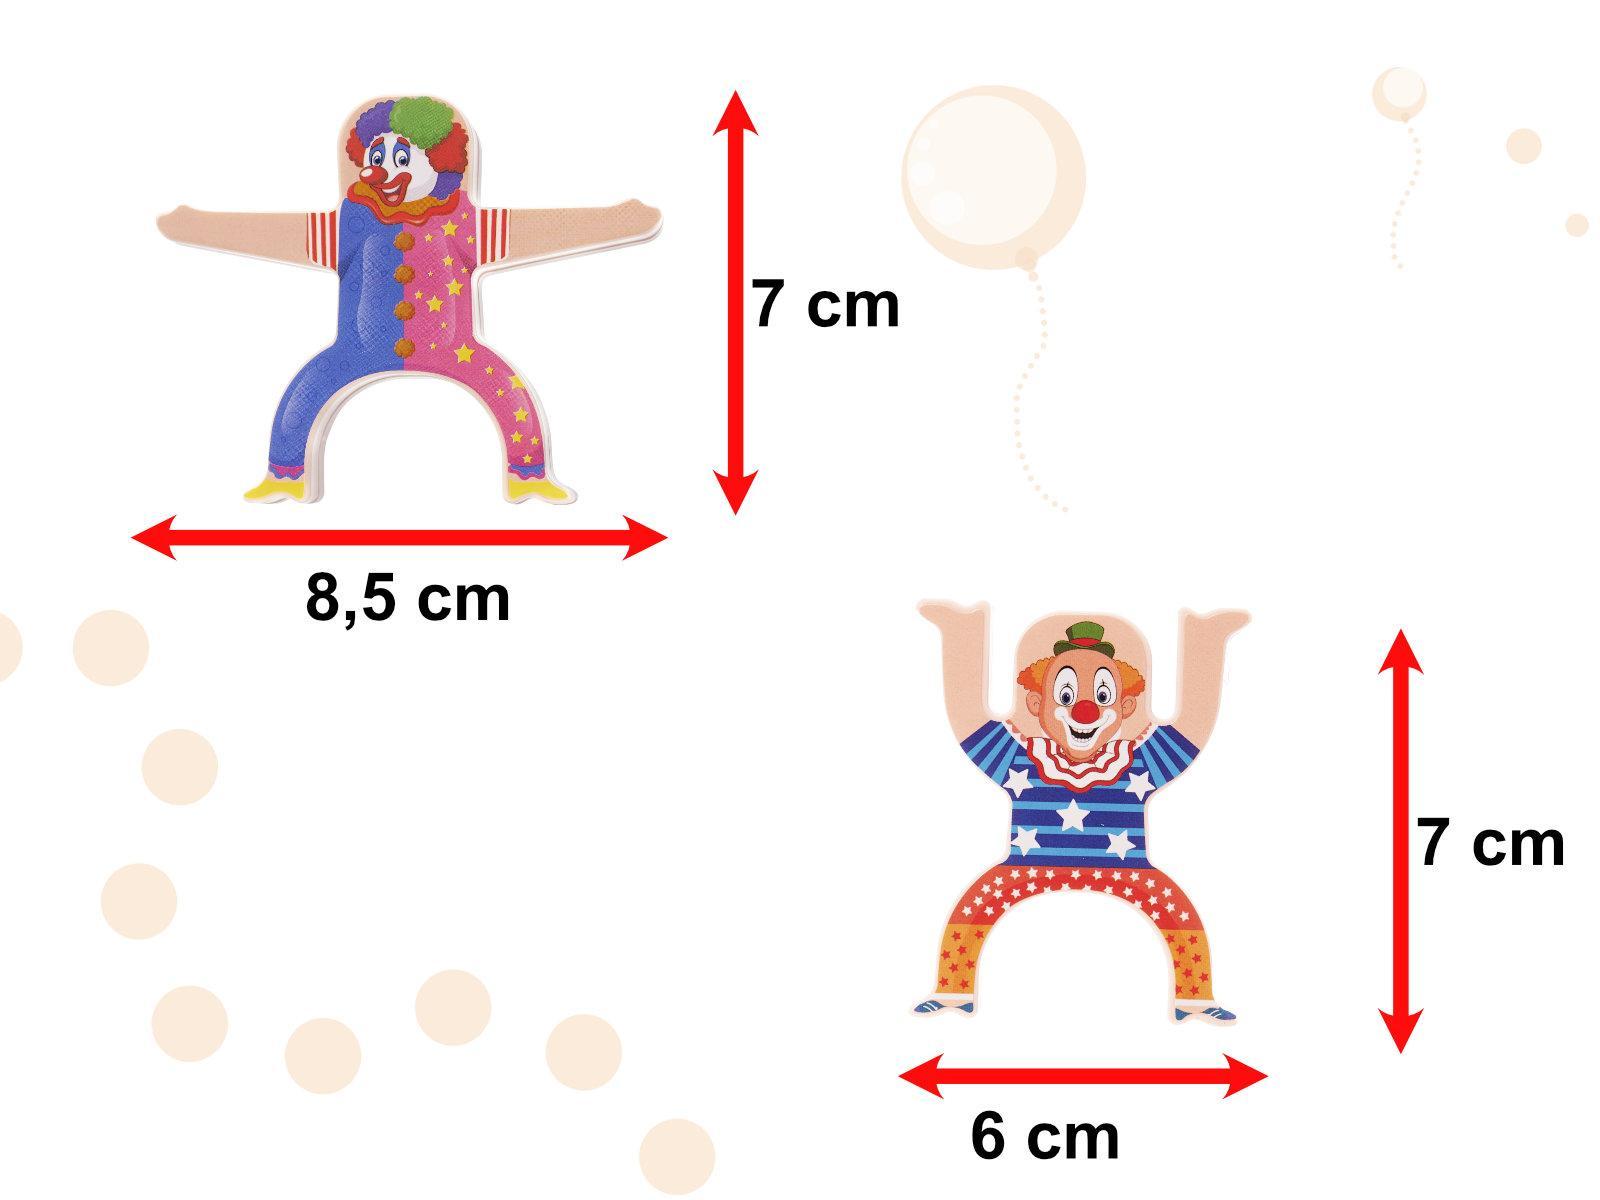 Gra zręcznościowa montessori układanka balansująca wieża klocki klaun 18 elementów dla dzieci 7x8,5x1,5 cm nr. 3